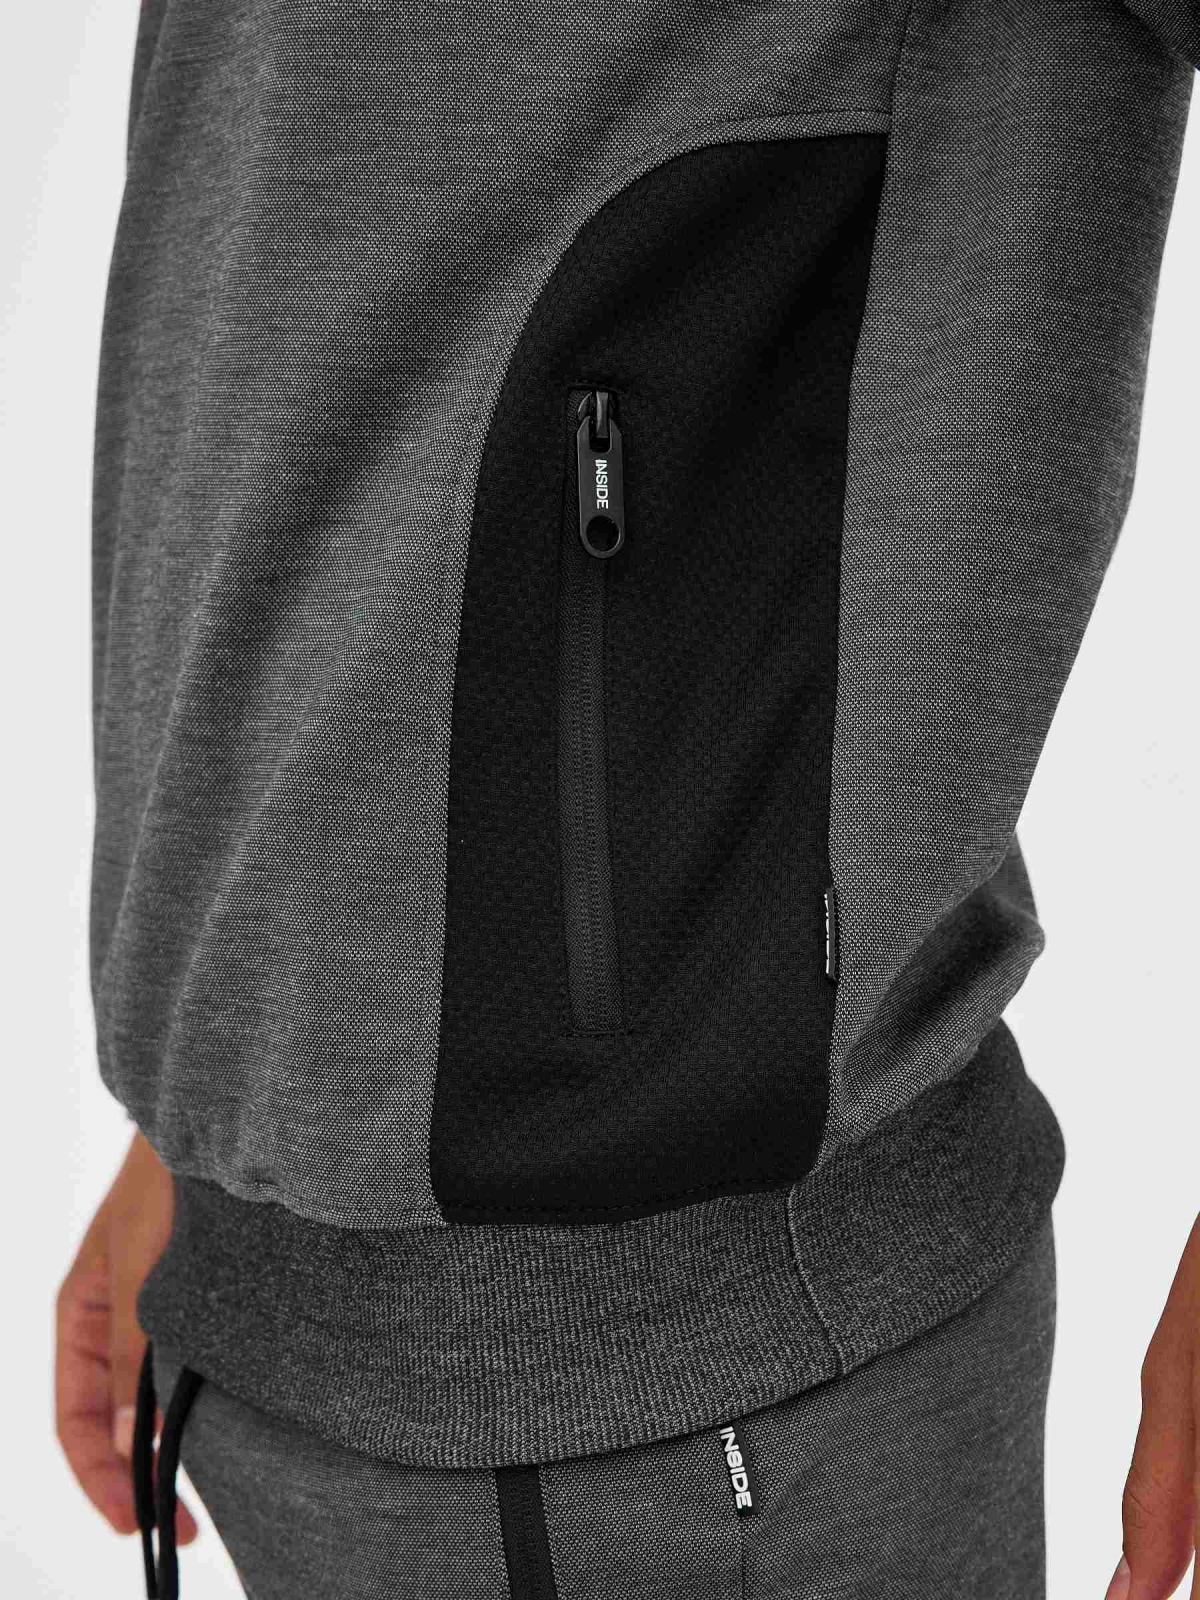 Textured sweatshirt black detail view